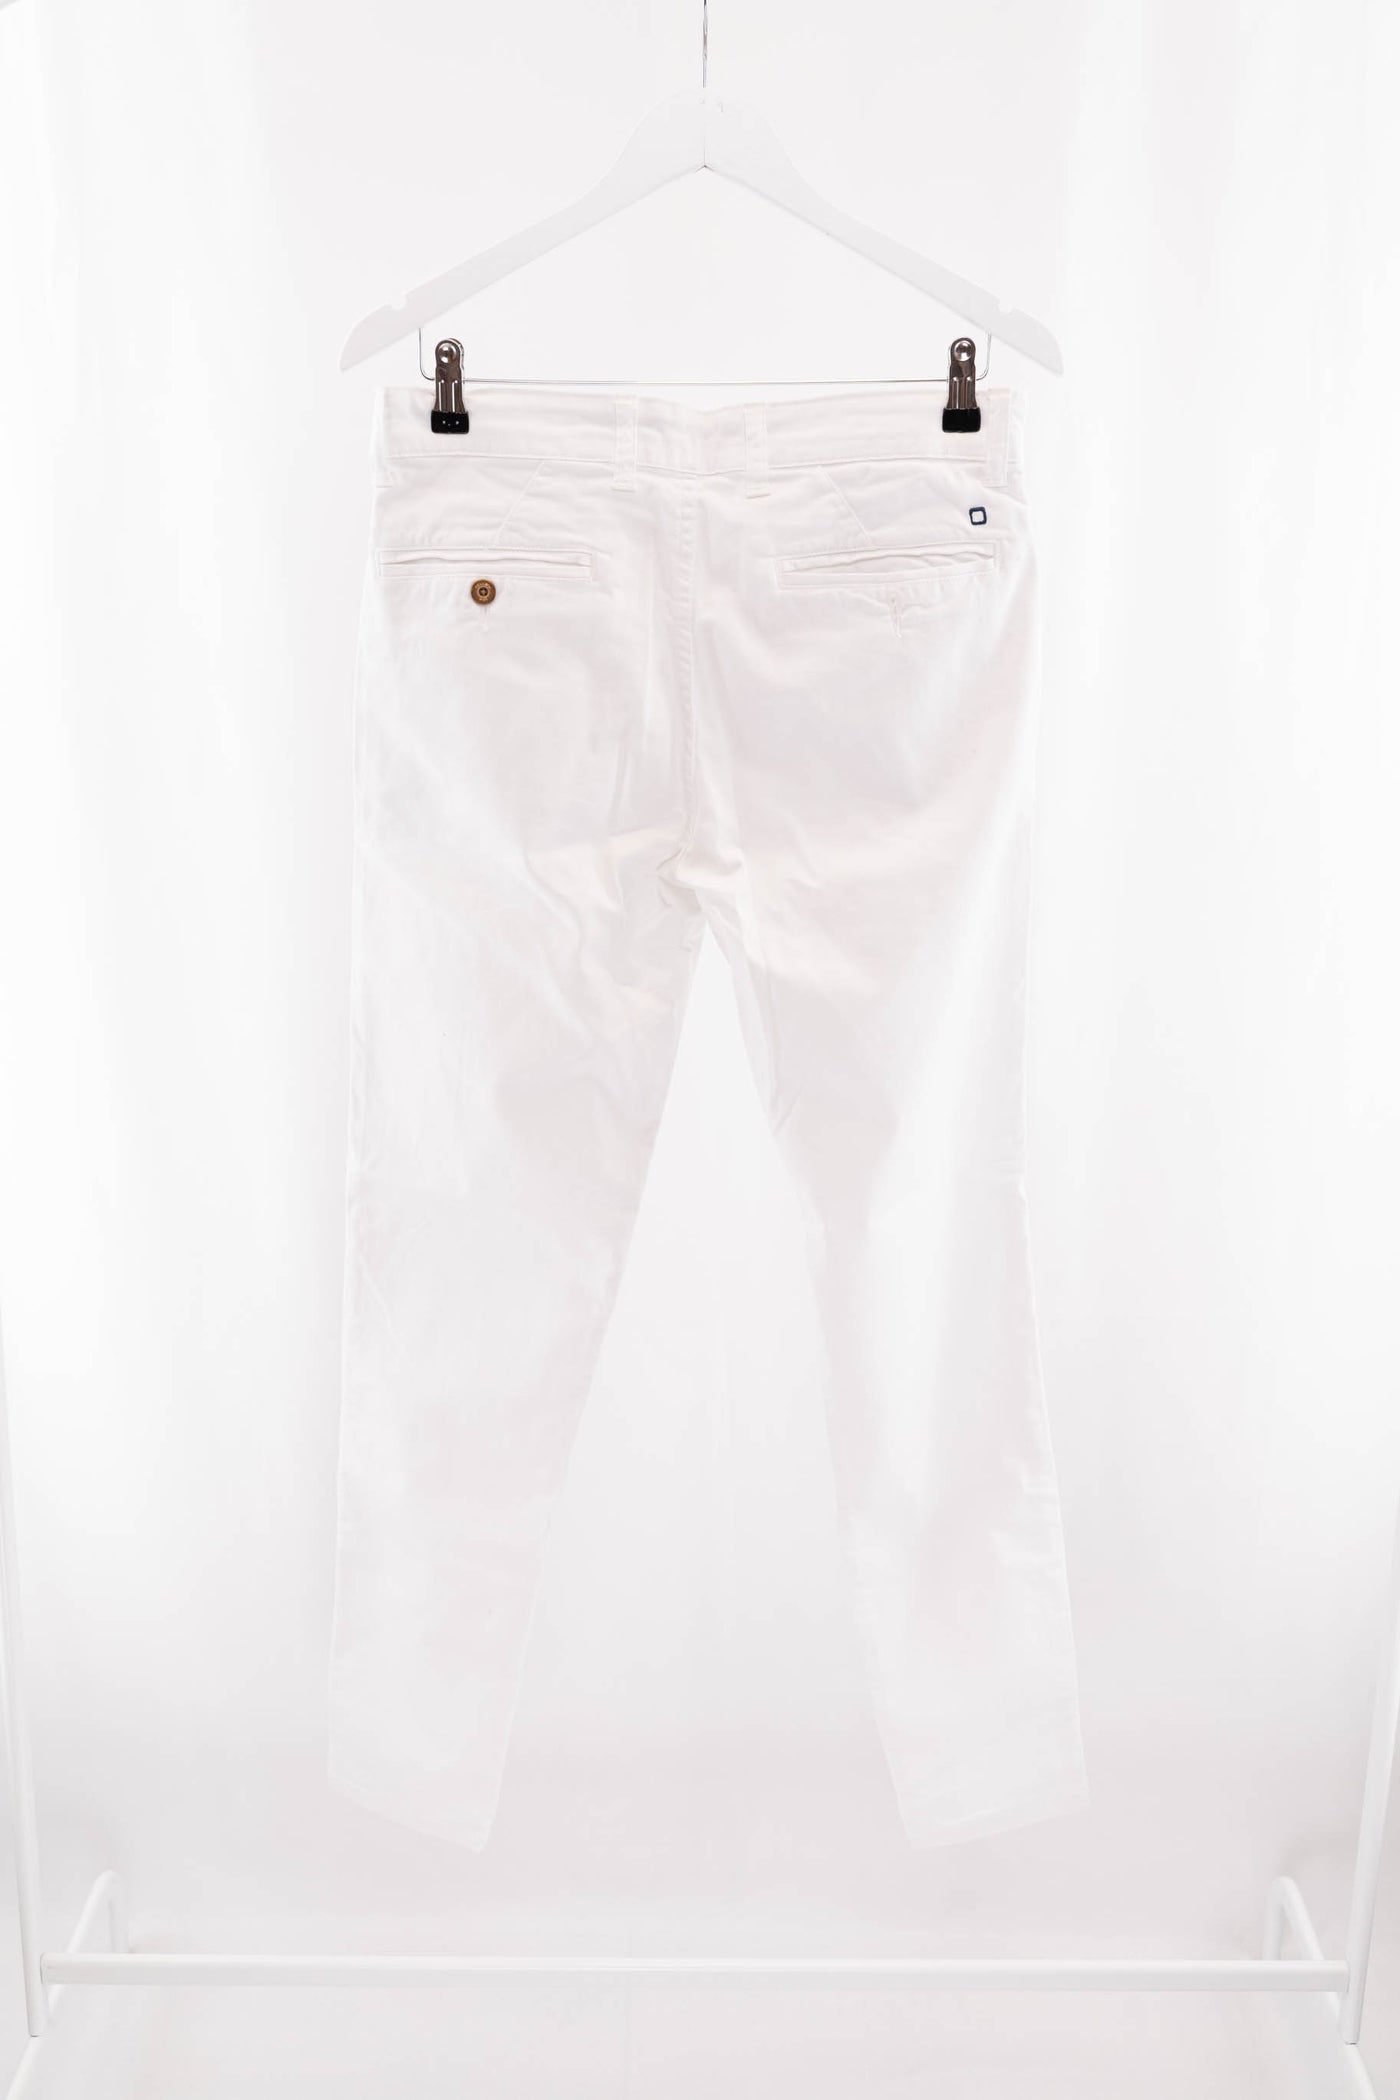 Pantalón blanco